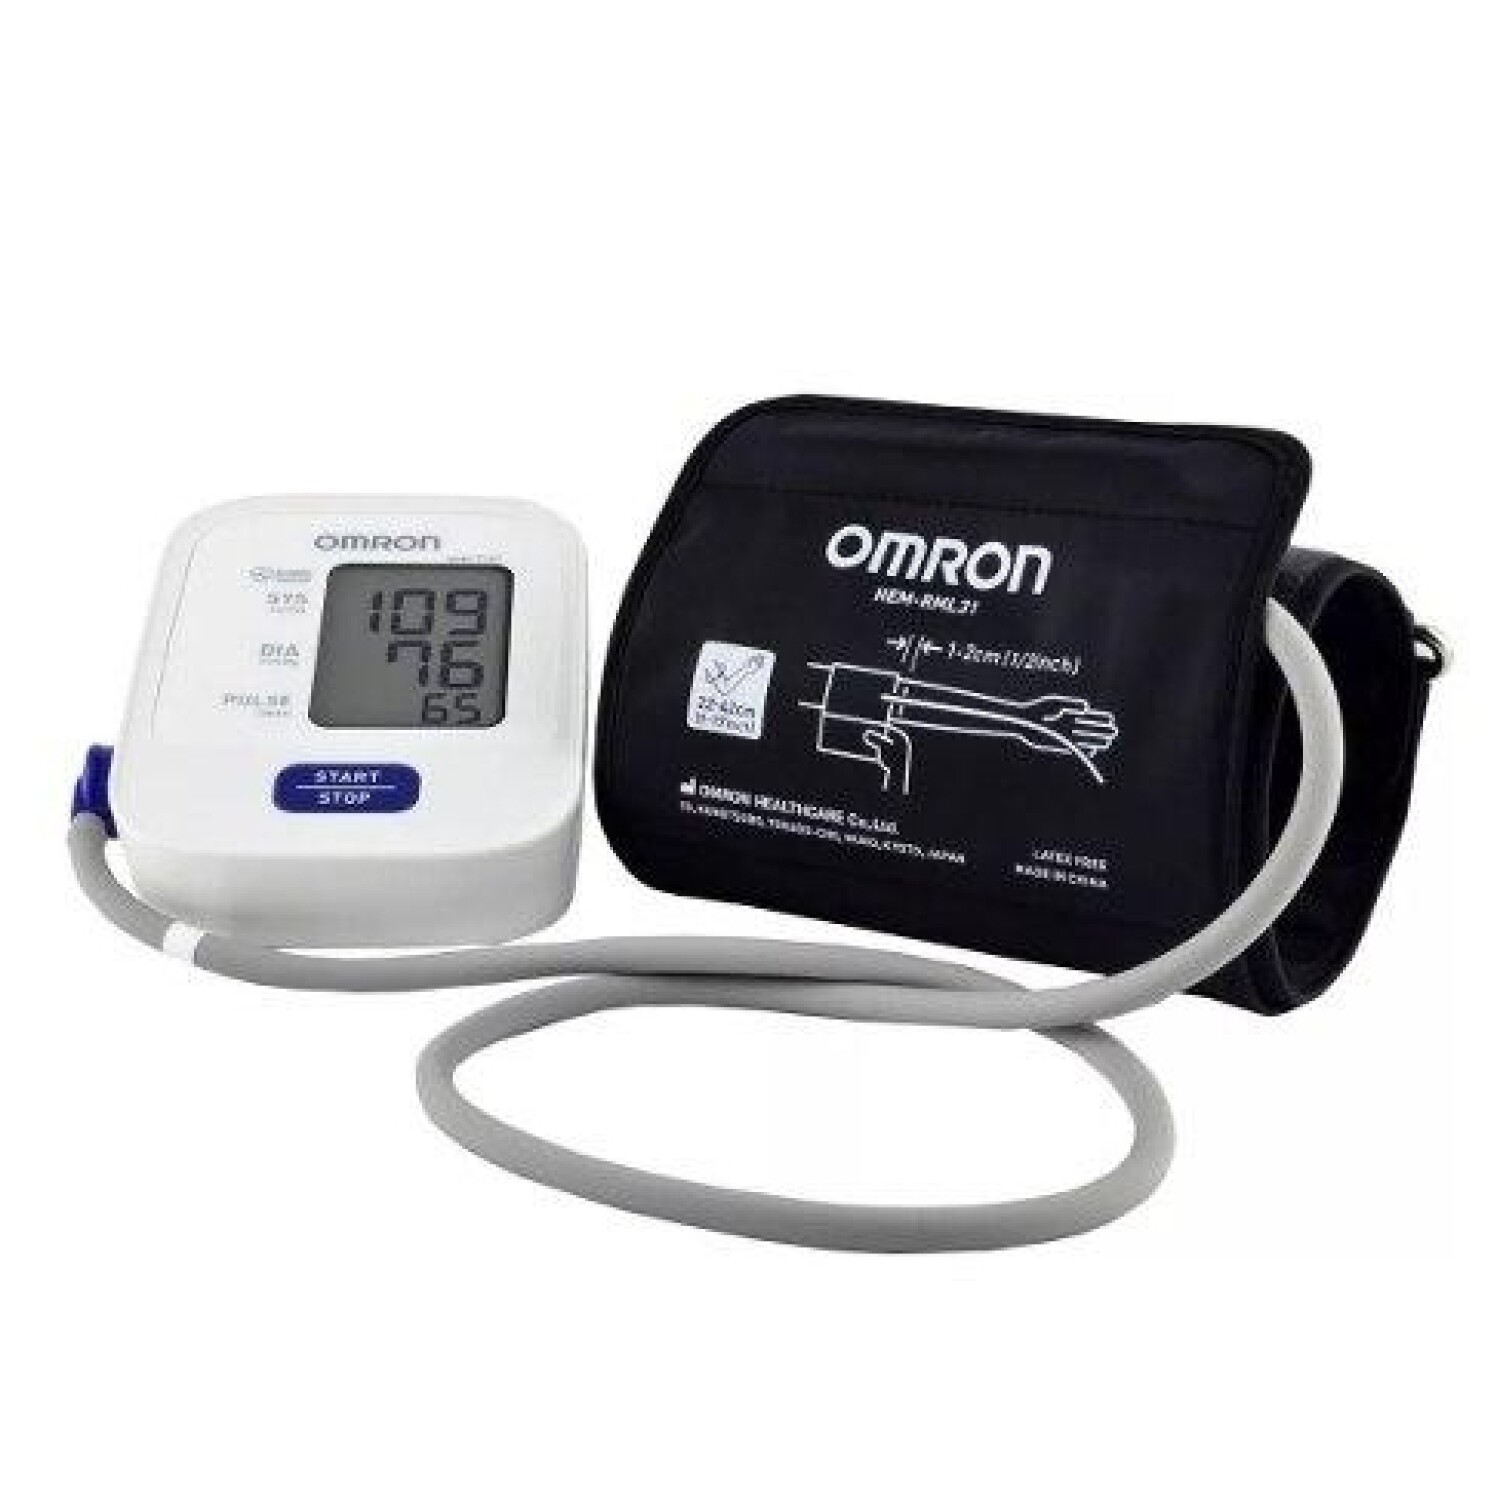 Meykos - El medidor de presión arterial Omron América